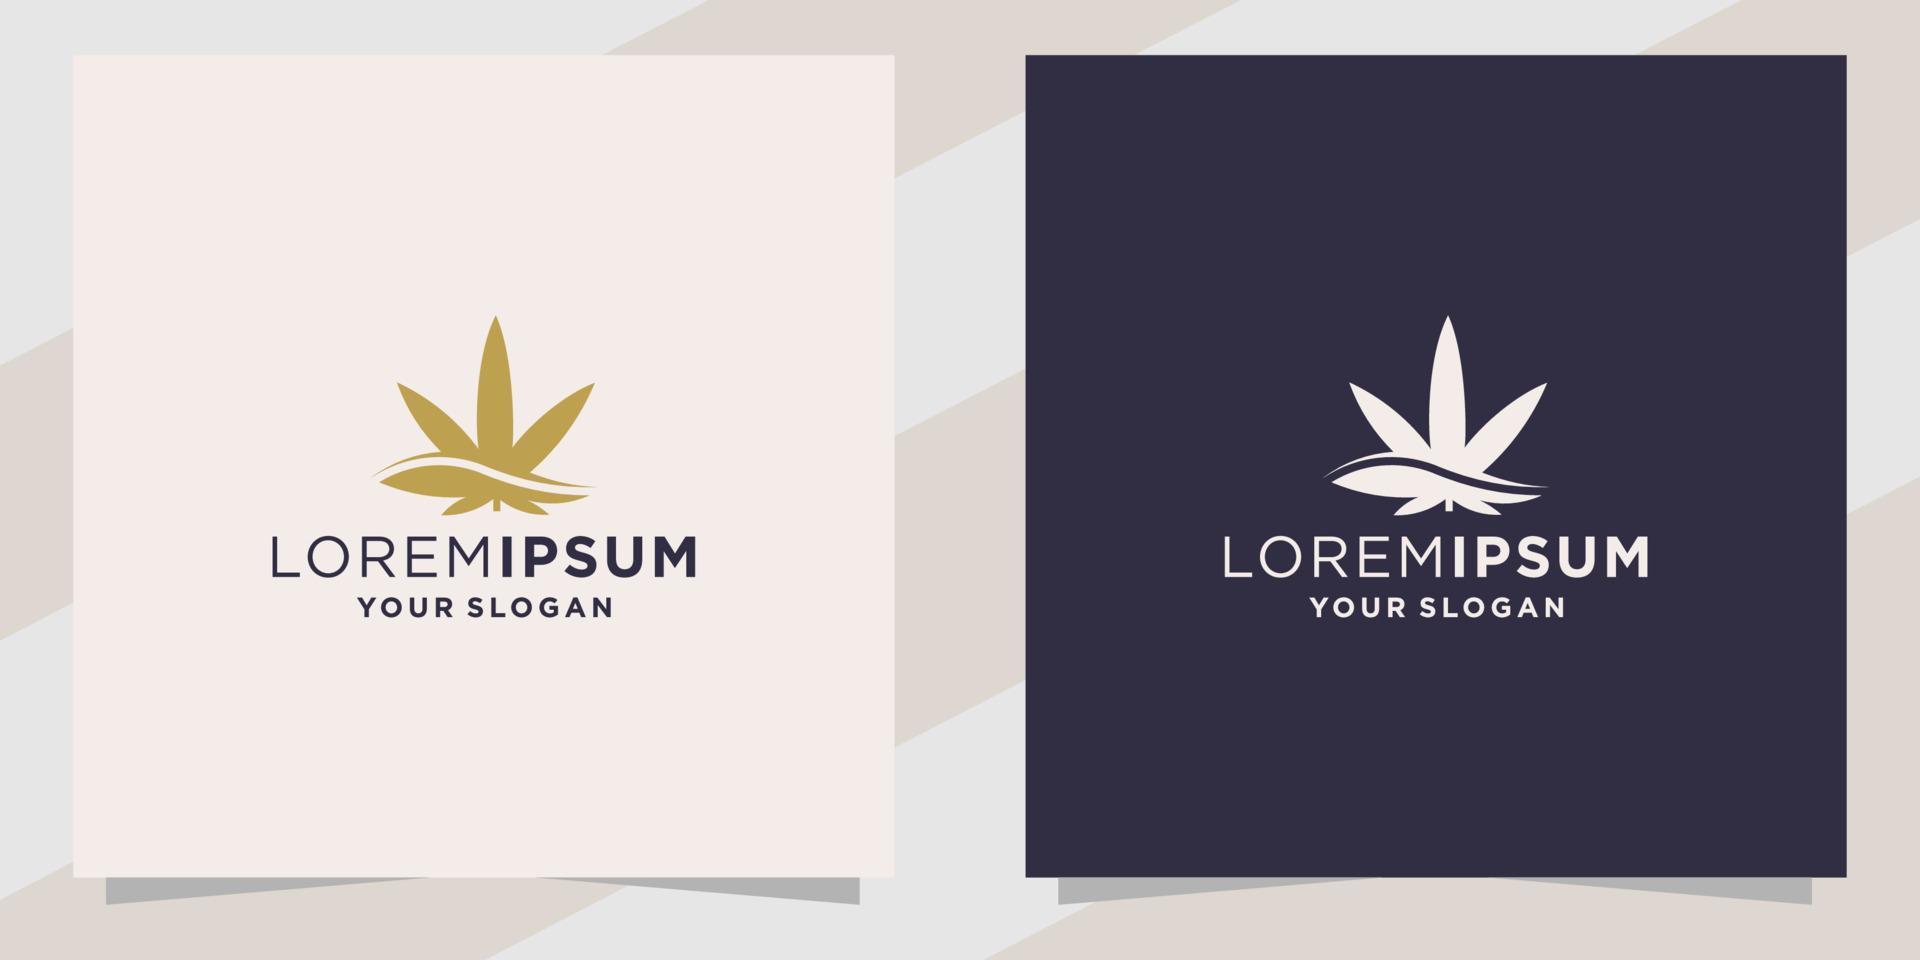 modelo de design de logotipo de cannabis vetor